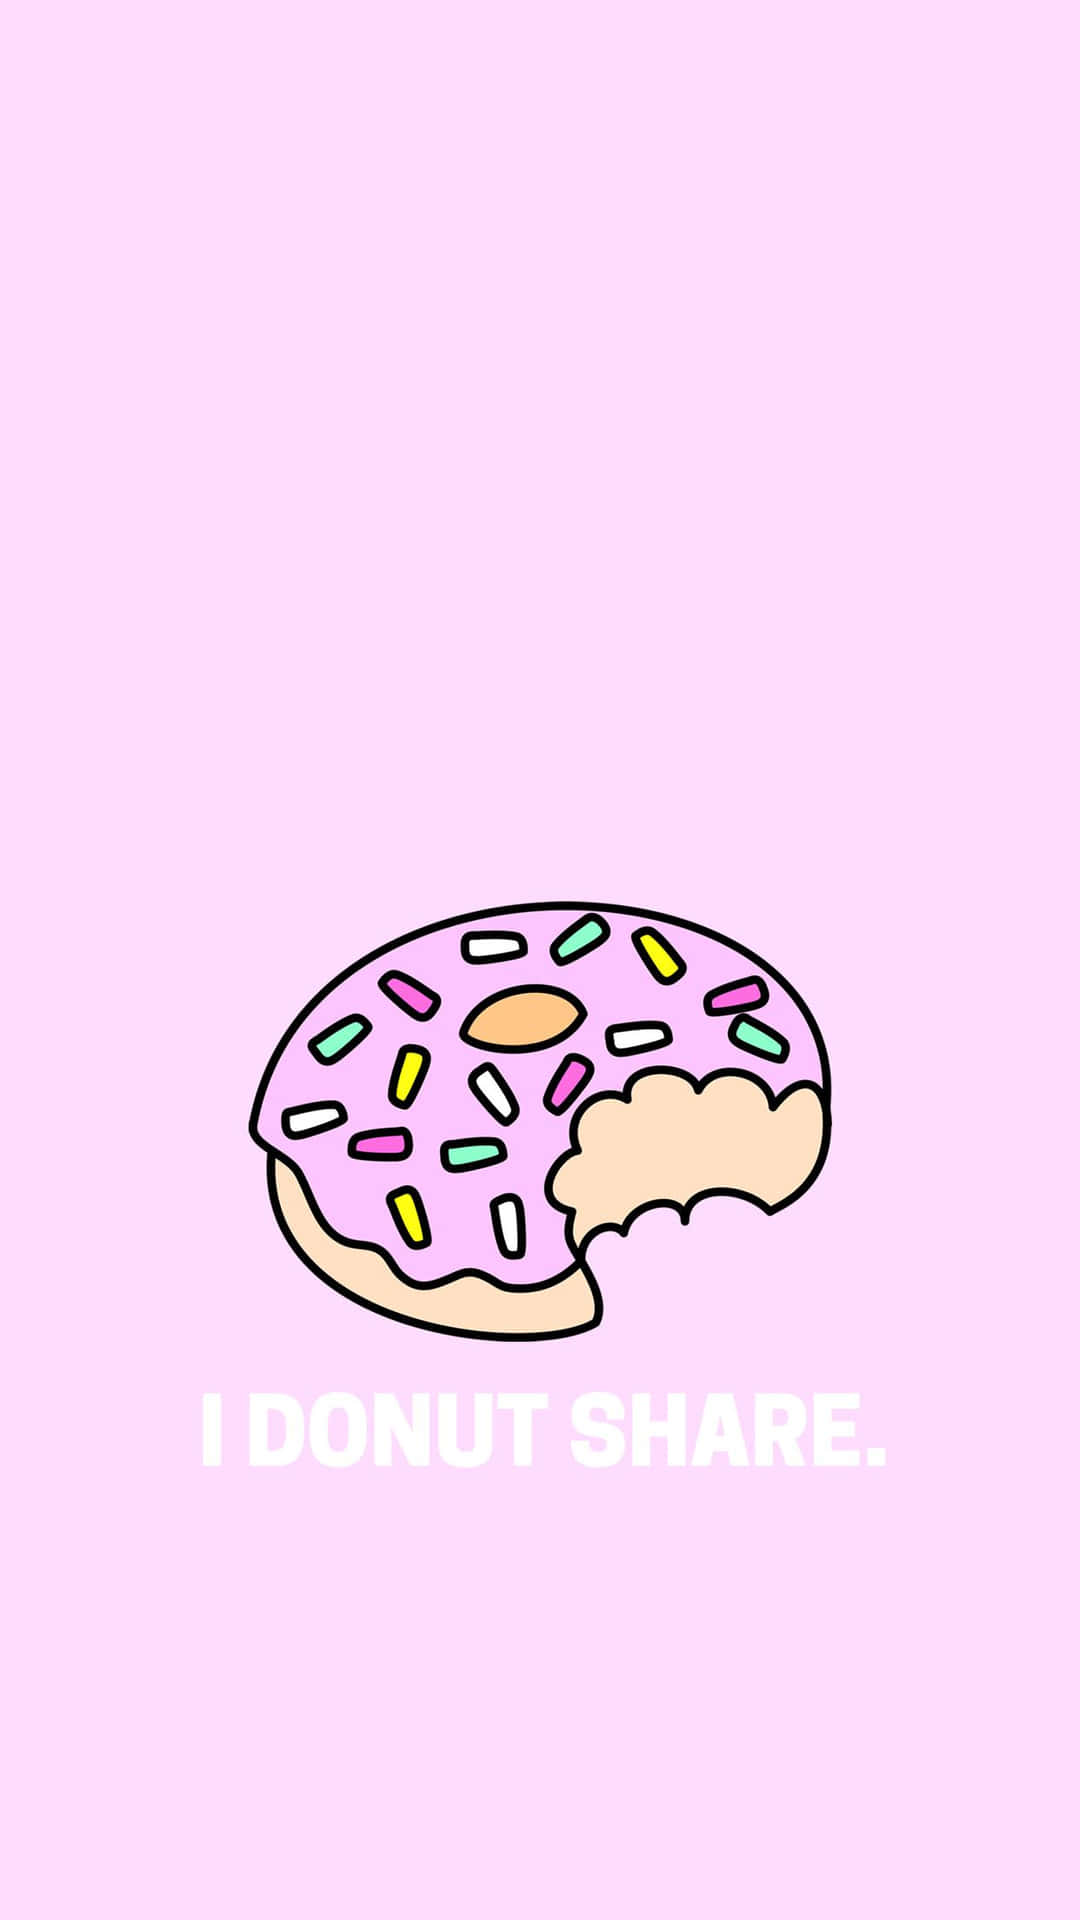 Imagensde Donuts